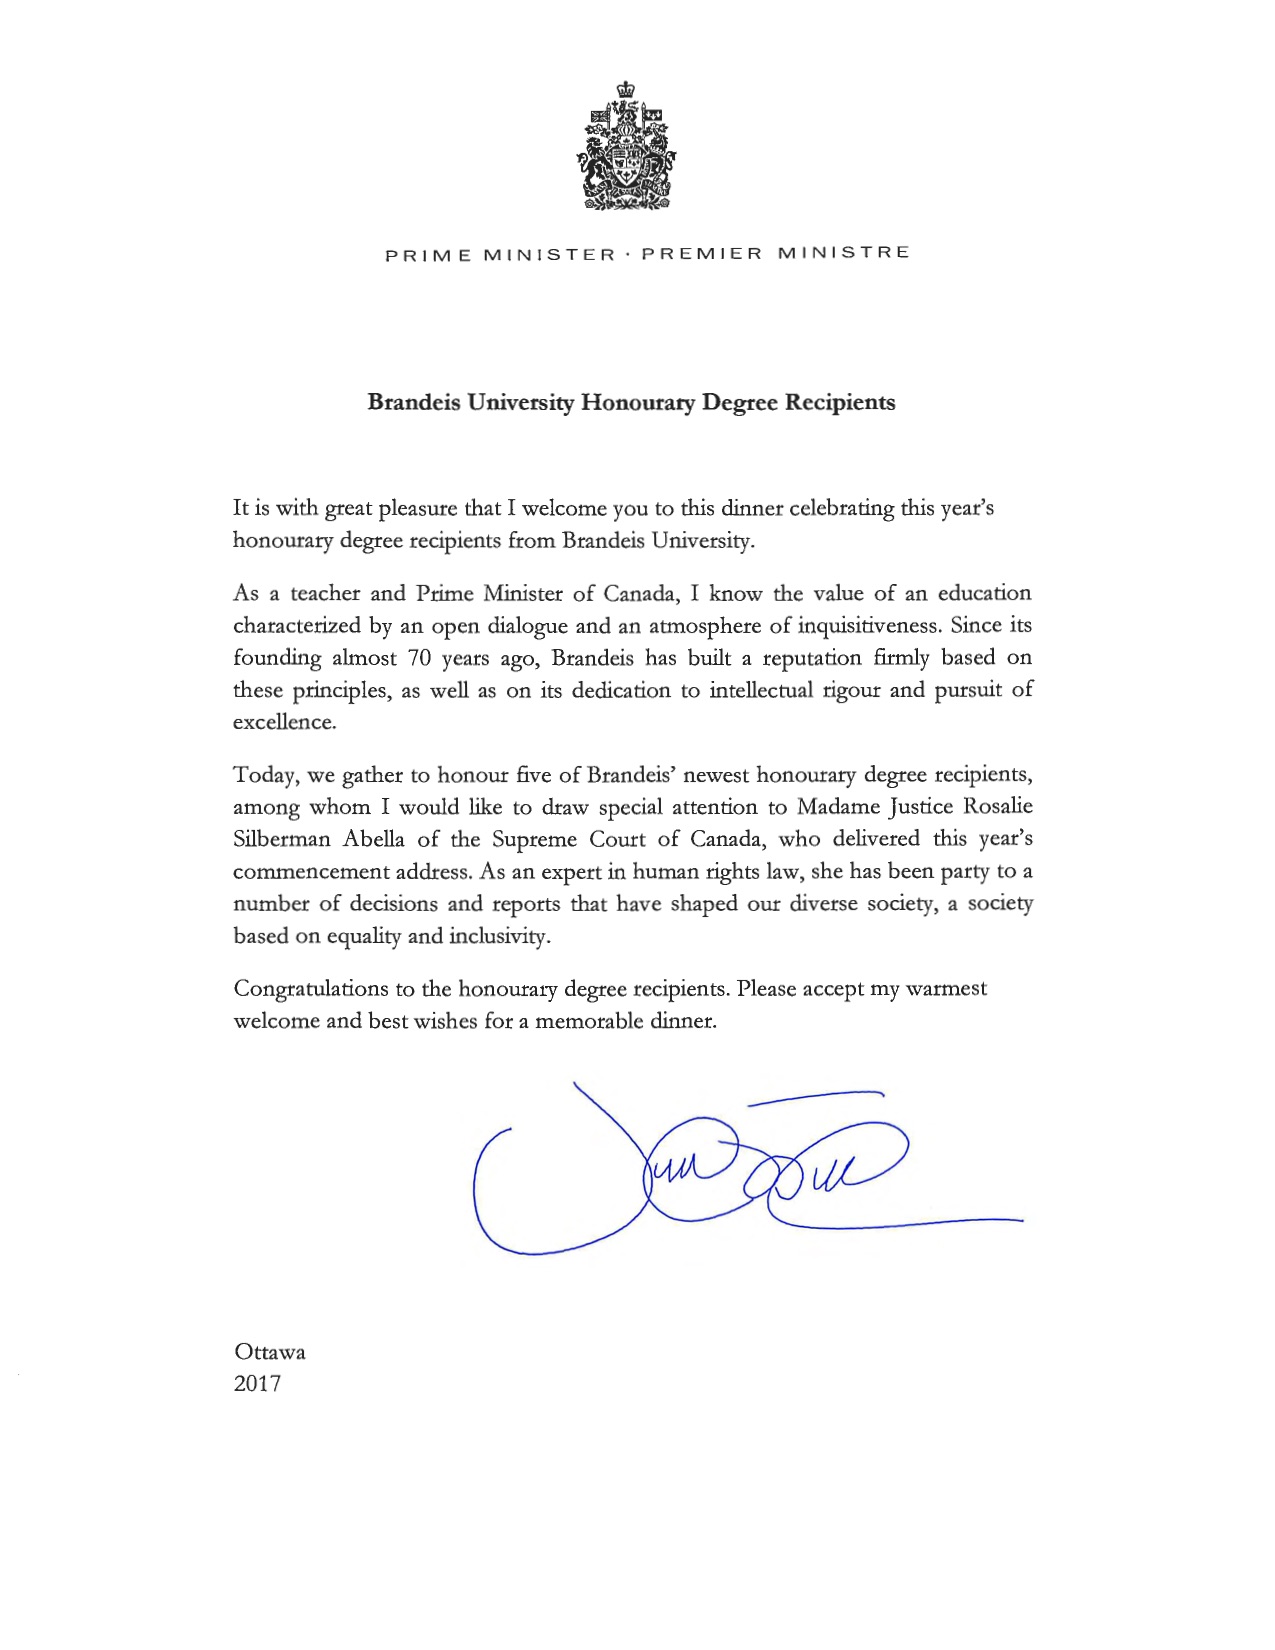 Trudeau Letter